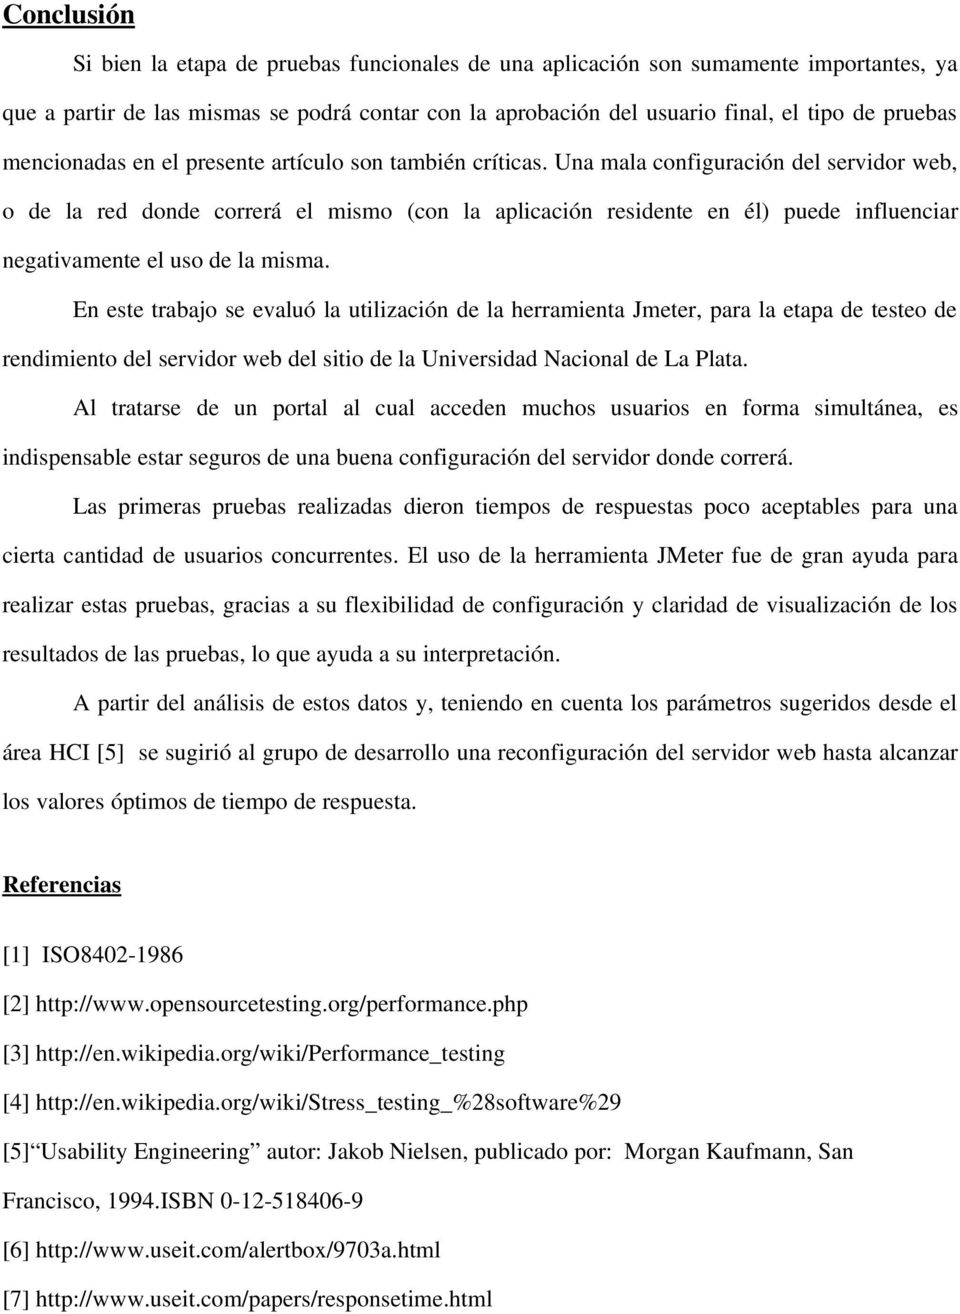 En este trabaj se evaluó la utilización de la herramienta Jmeter, para la etapa de teste de rendimient del servidr web del siti de la Universidad Nacinal de La Plata.